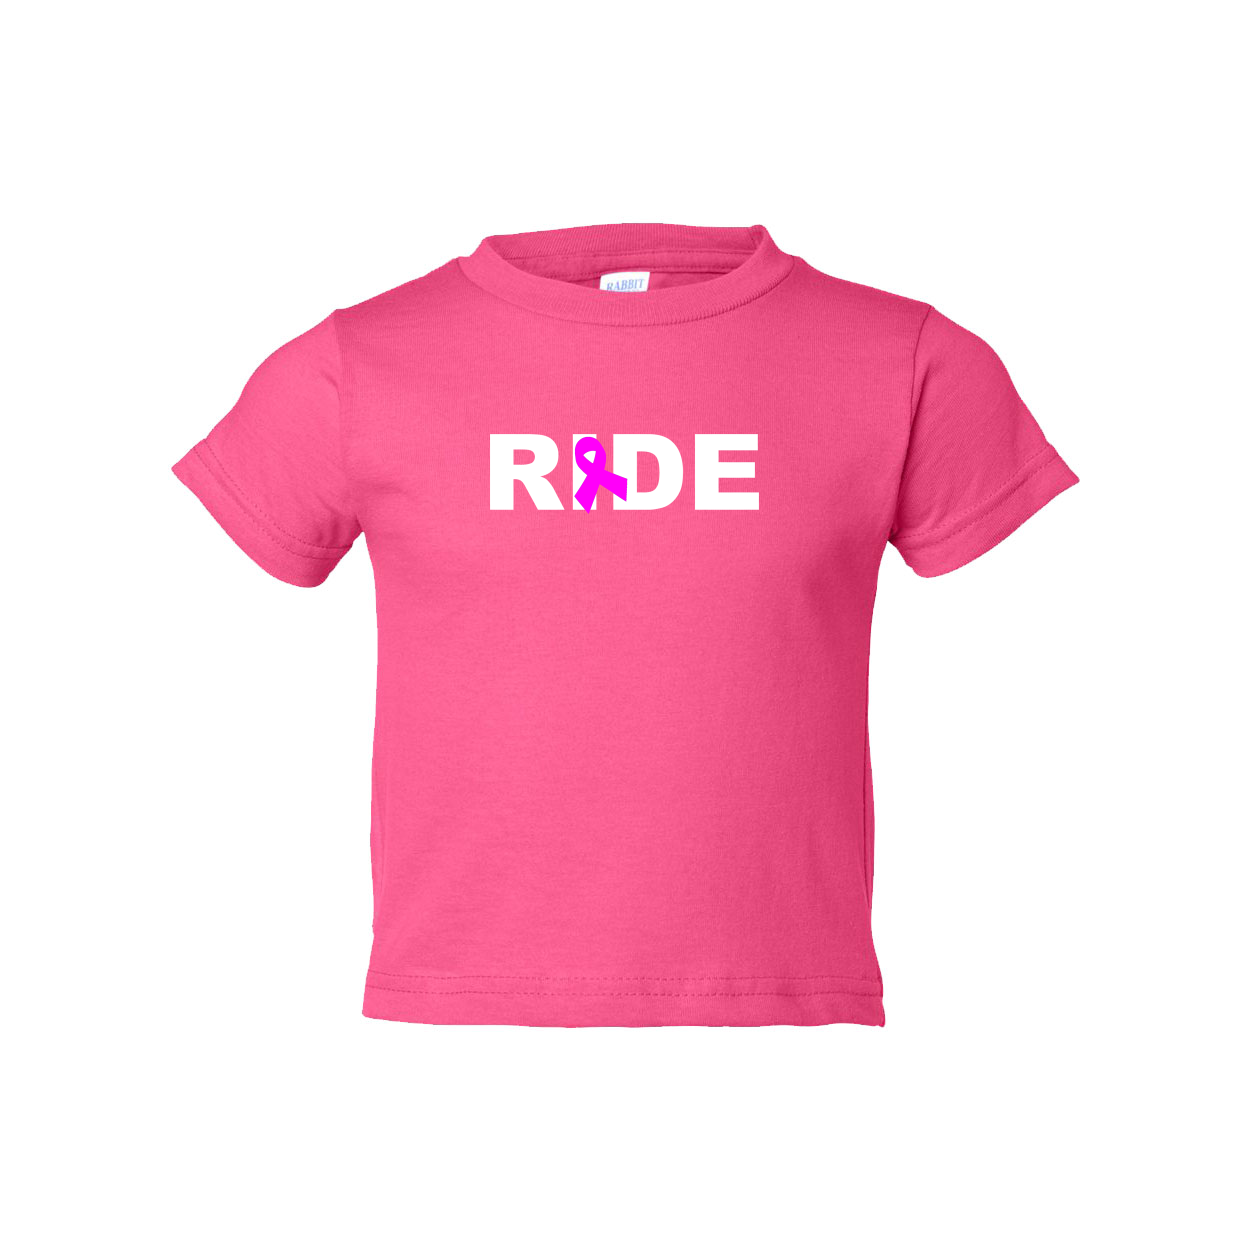 Ride Ribbon Logo Classic Toddler T-Shirt Pink